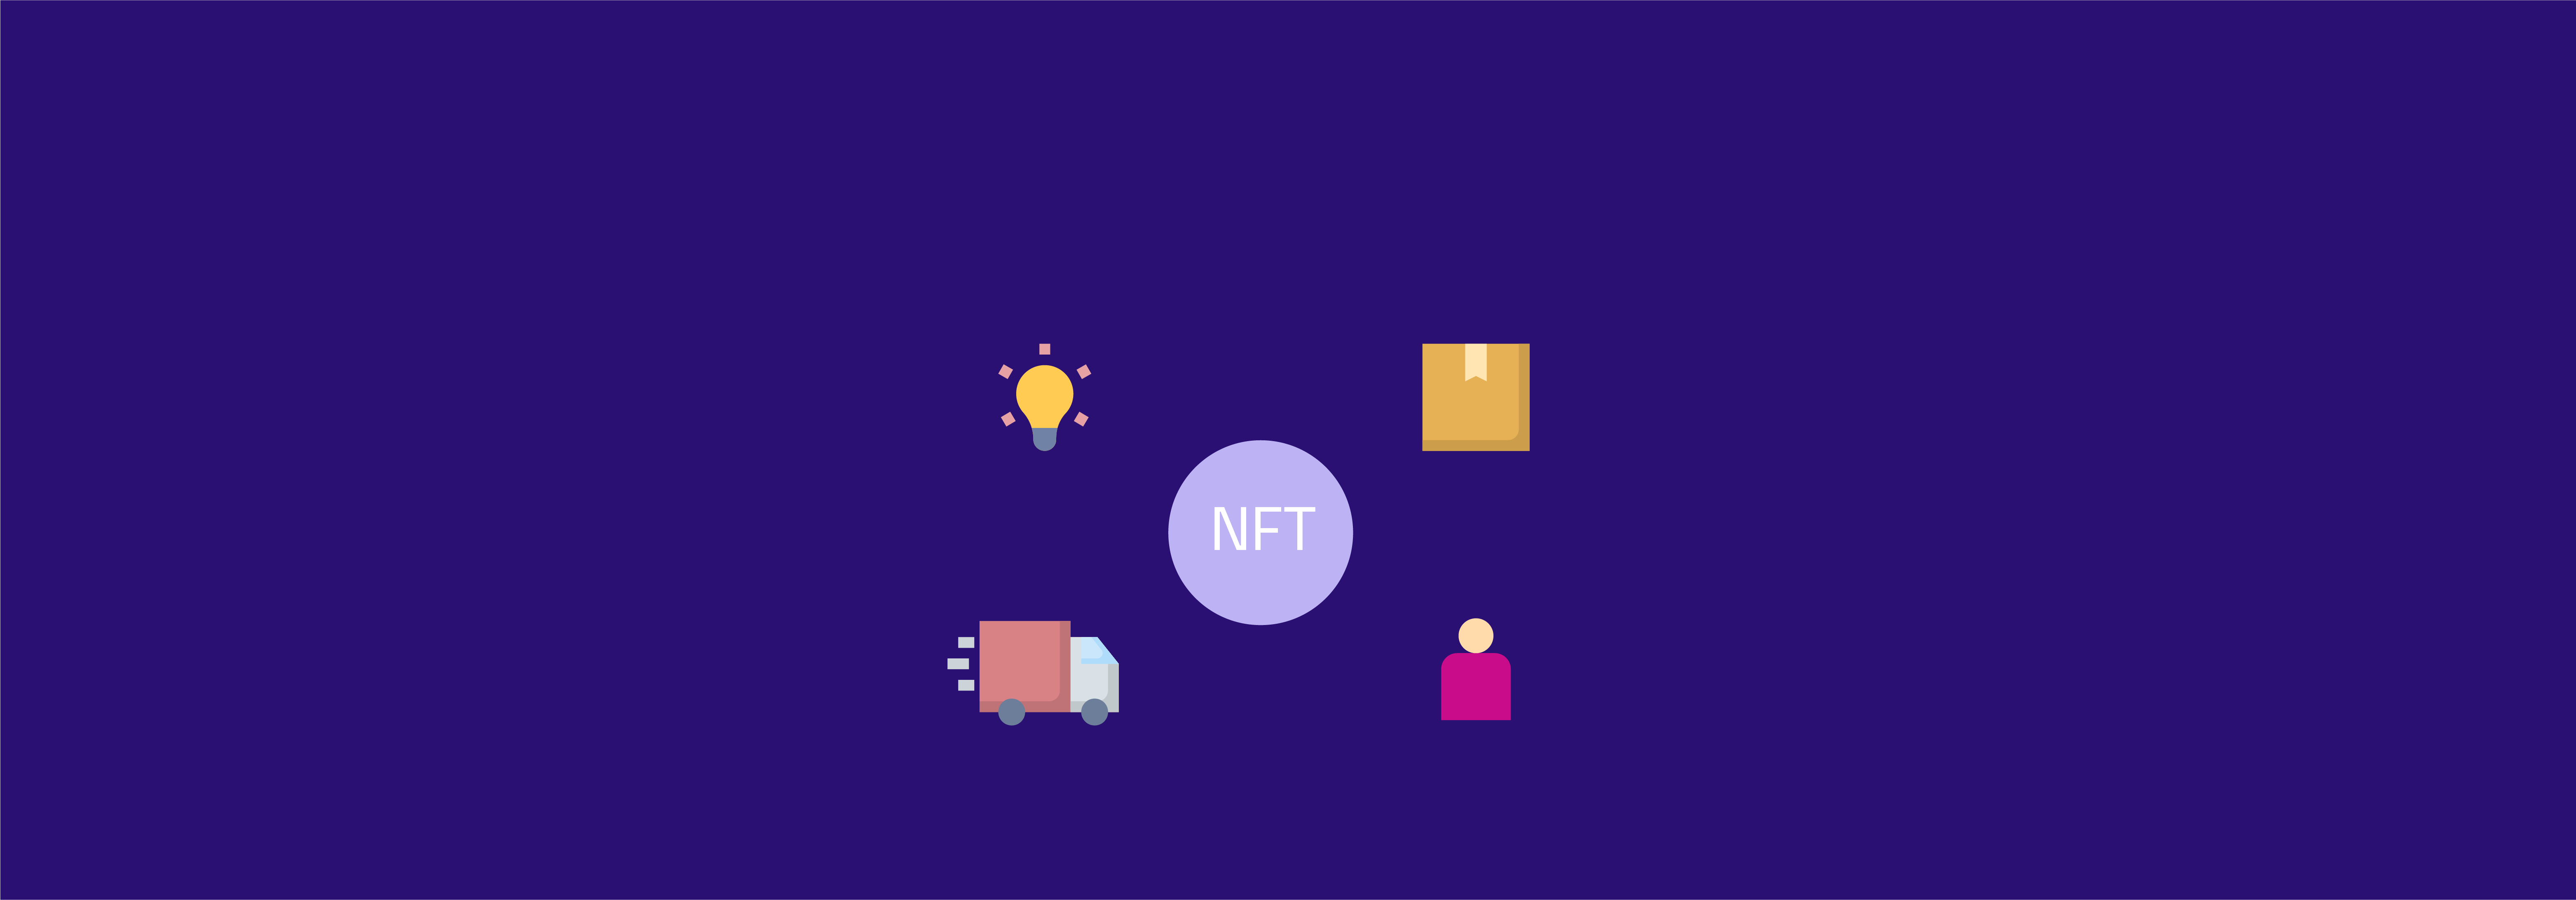 کاربرد NFT در مدیریت زنجیره تامین